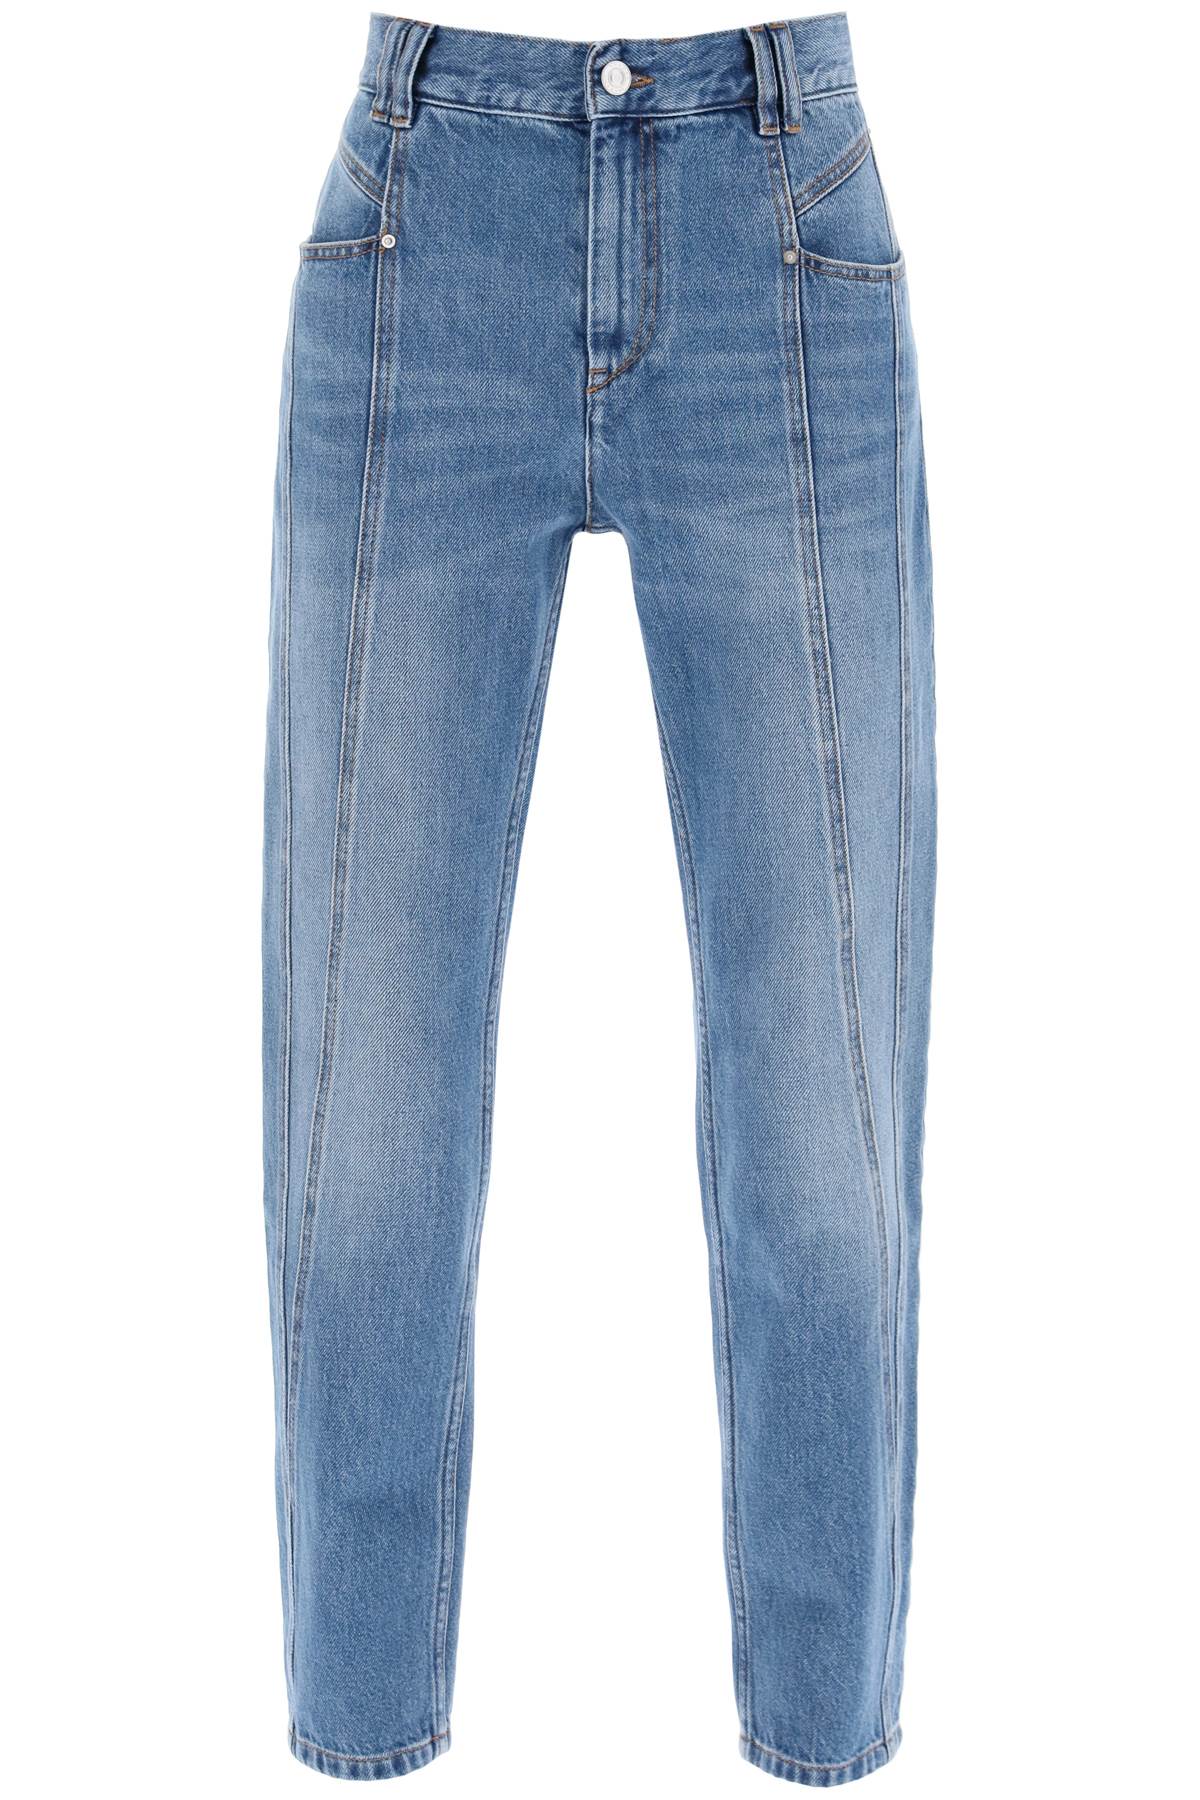 Shop Isabel Marant Nikira Jeans Women In Blue